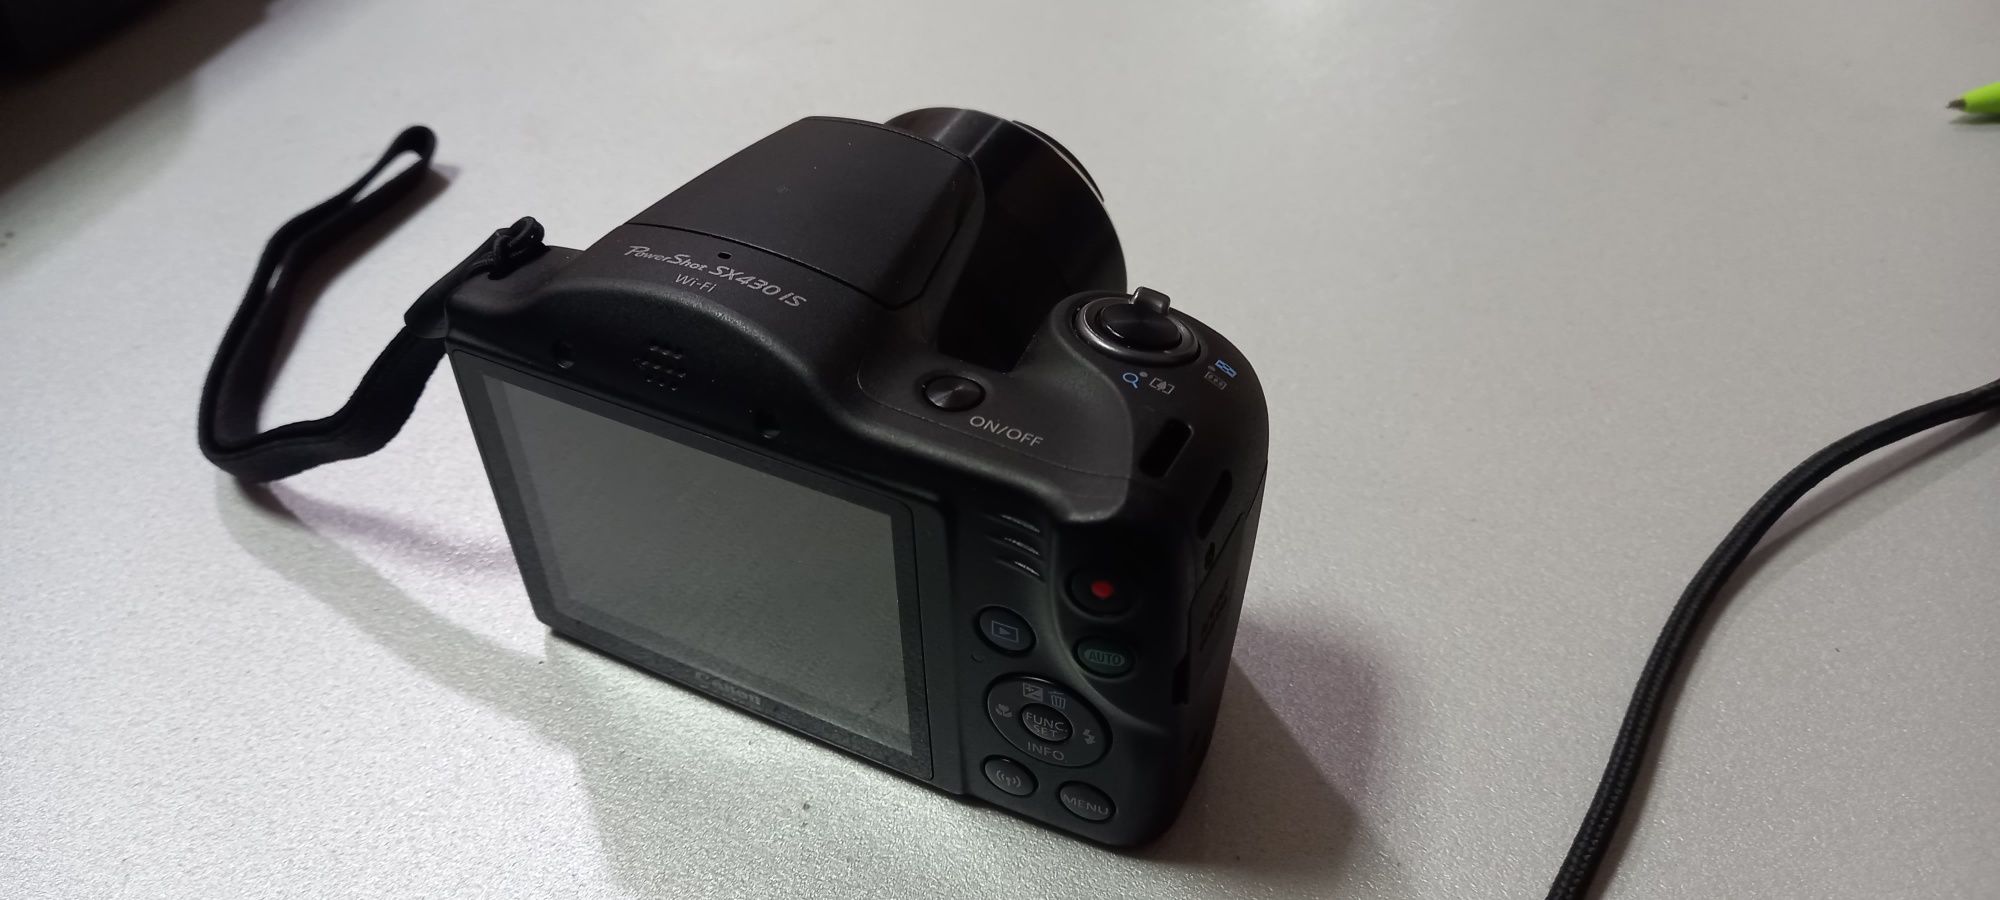 Компактный цифровой фотоаппарат canon powershot SX 430 IS